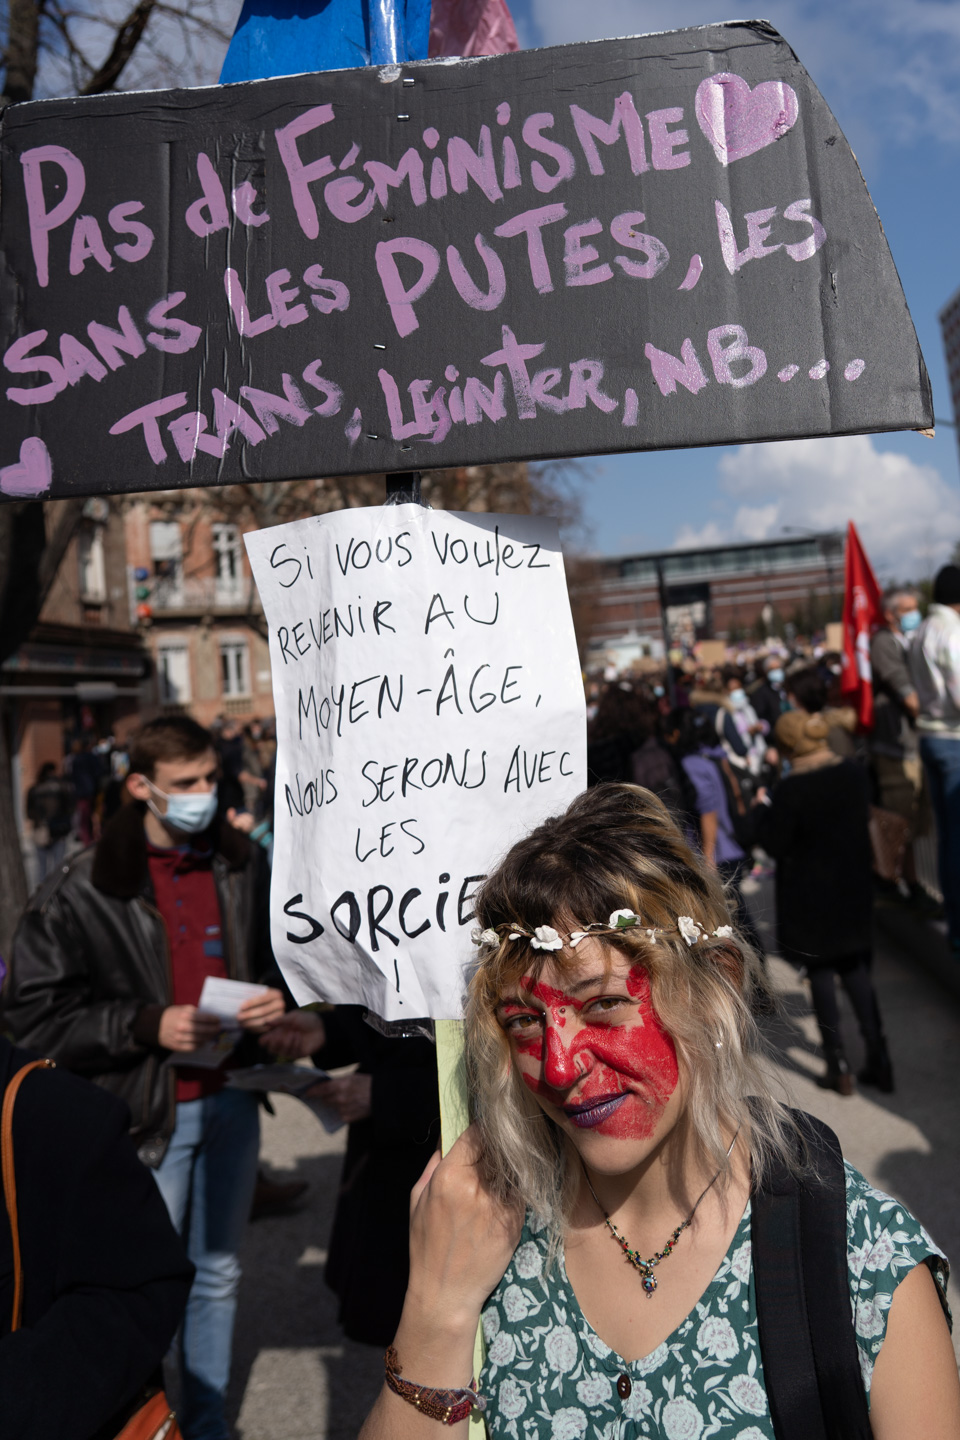 Une manifestante au visage peint en rouge, regard caméra, montre deux pancartes "Pas de féminisme sans les putes, les trans, les inter, nb..." et "Si vous voulez revenir au moyen-âge, nous serons avec les sorcières"  lors de la manifestation pour la journée sur les droits des femmes. Toulouse, 8 mars 2021.